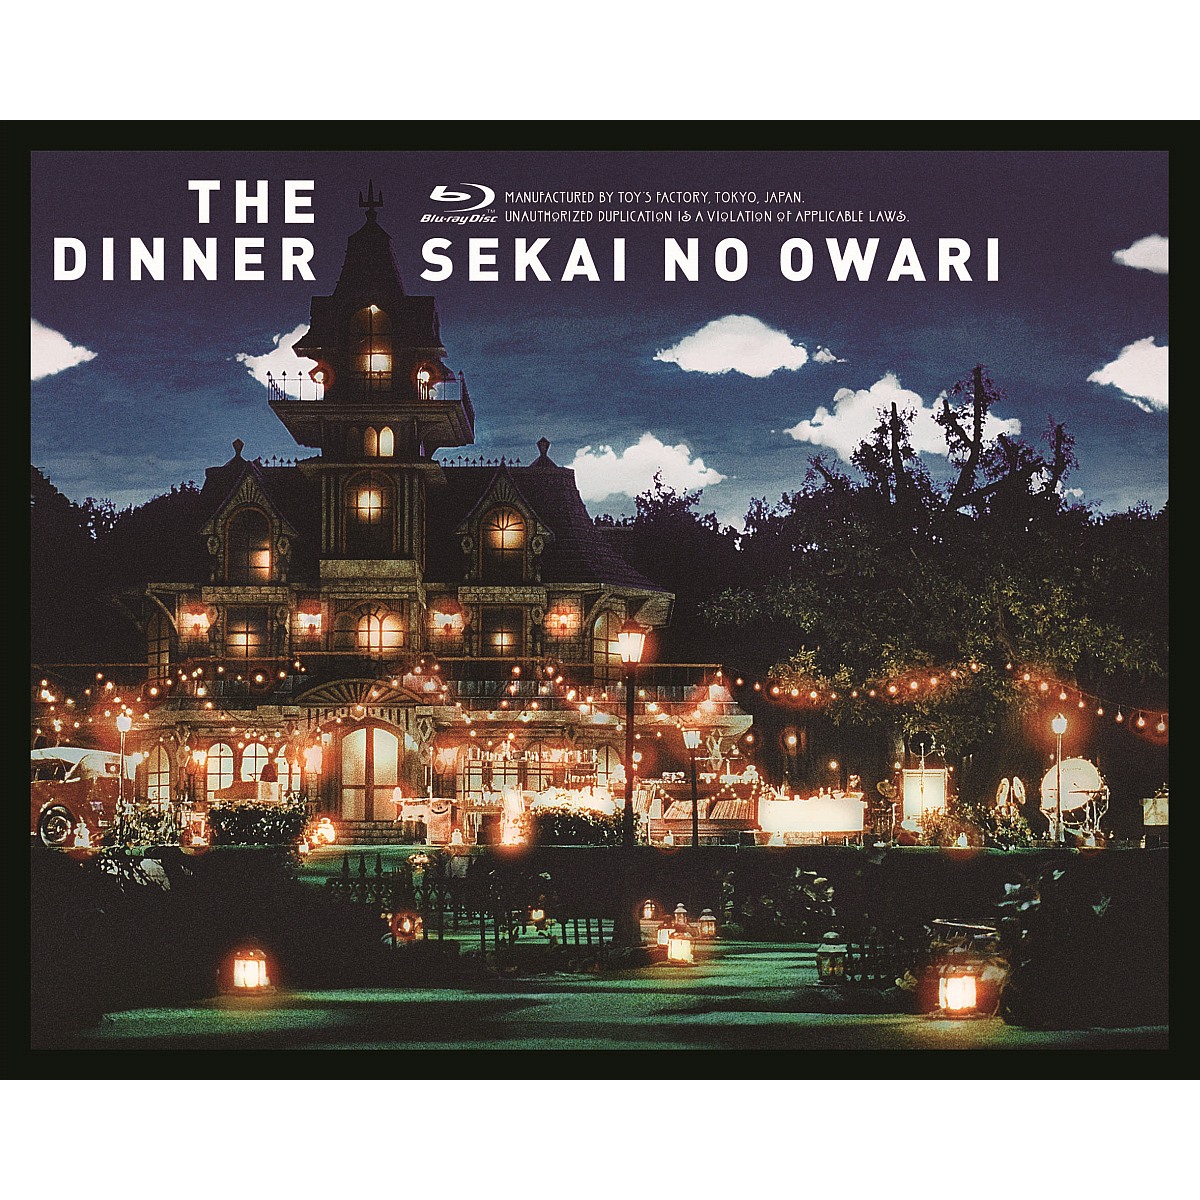 楽天ブックス: The Dinner【Blu-ray】 - SEKAI NO OWARI 